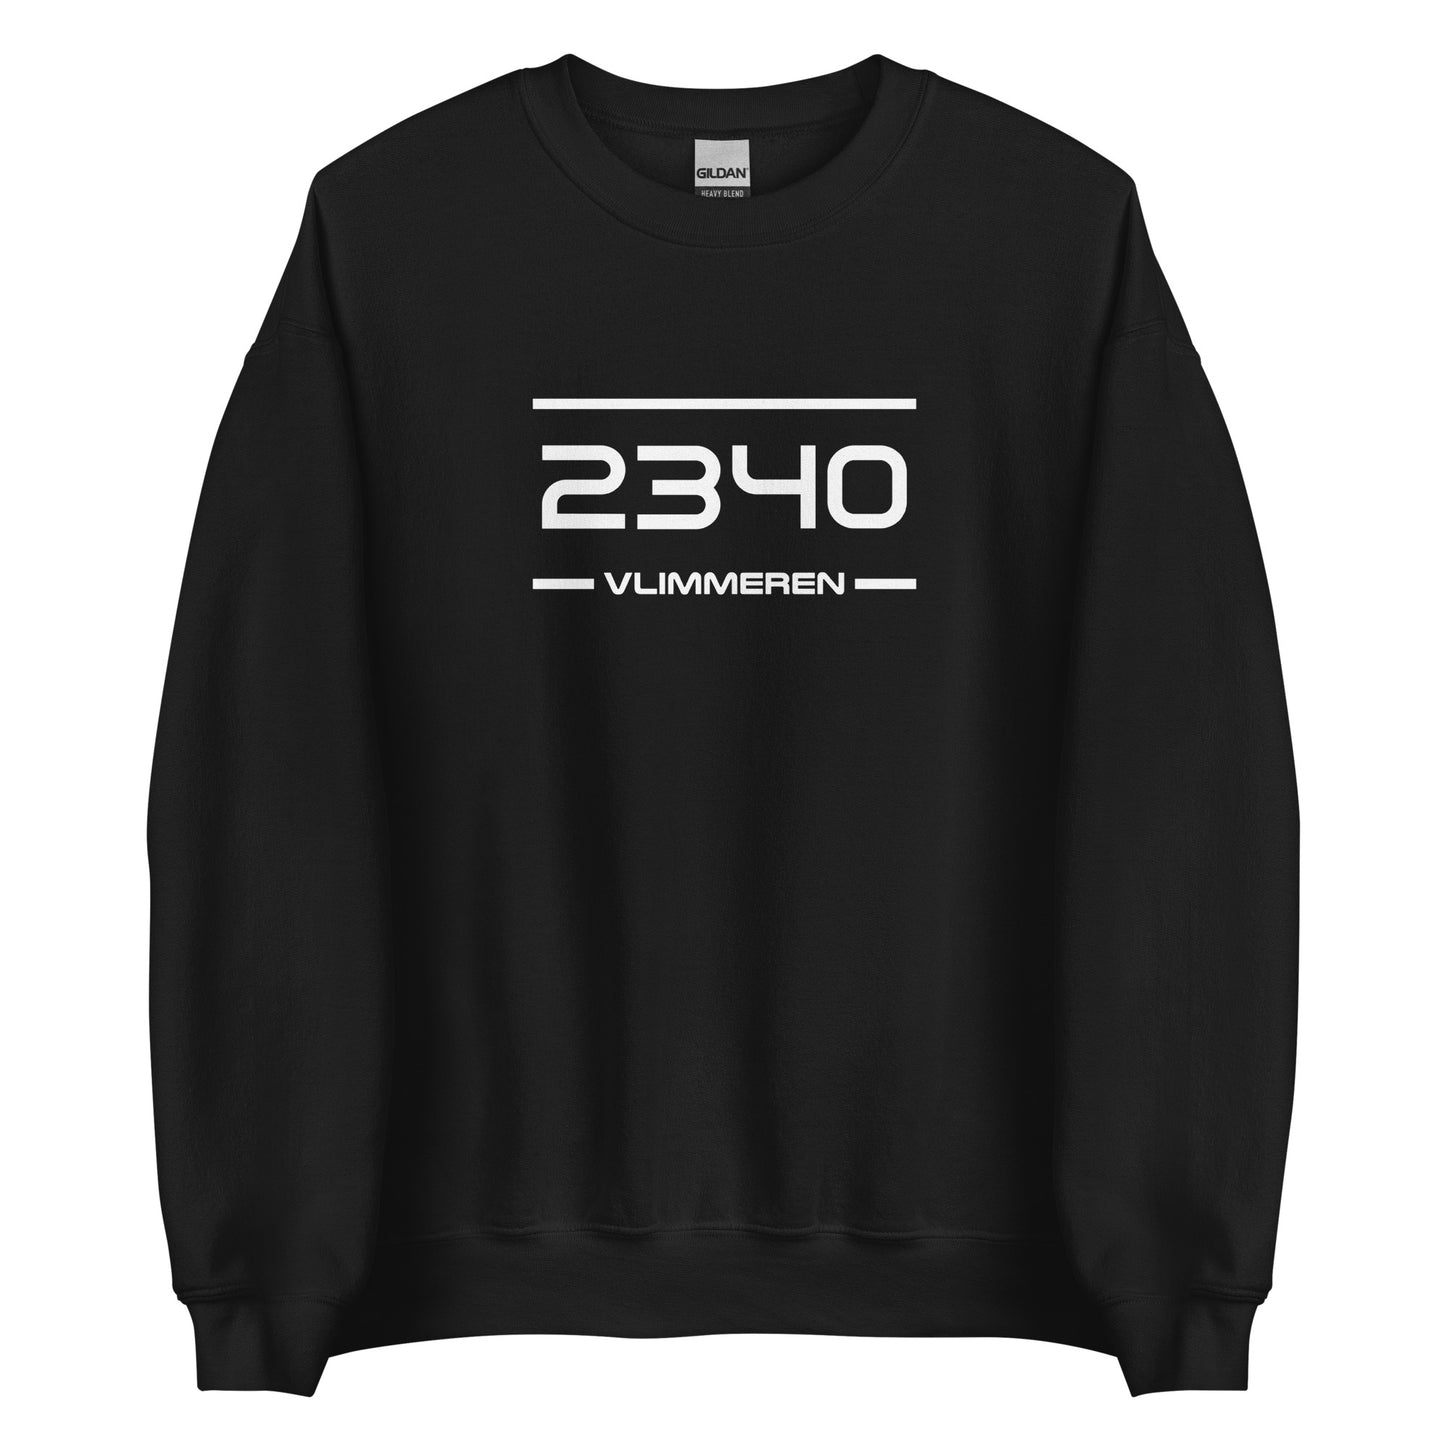 Sweater - 2340 - Vlimmeren (M/V)